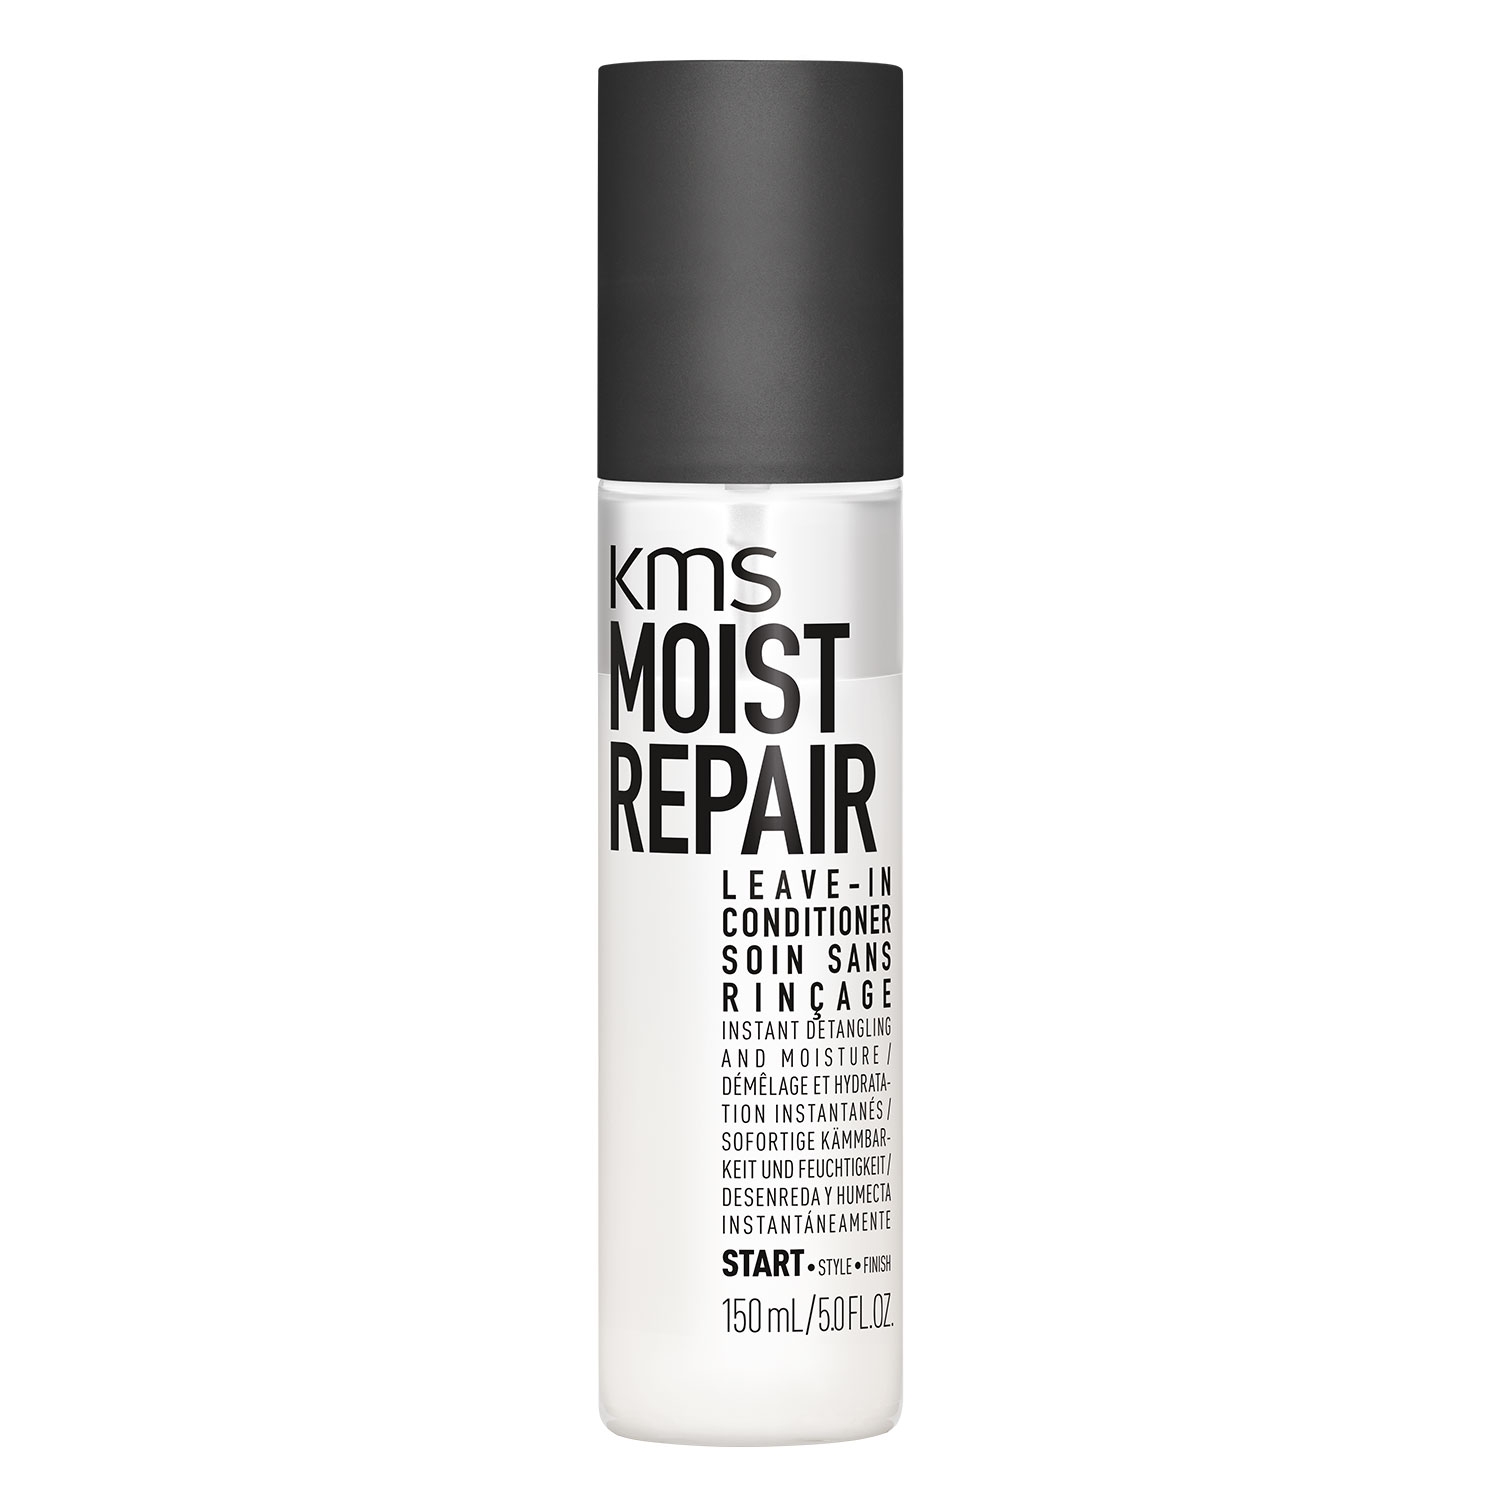 Produktbild von Moist Repair - Leave-In Conditioner Spray